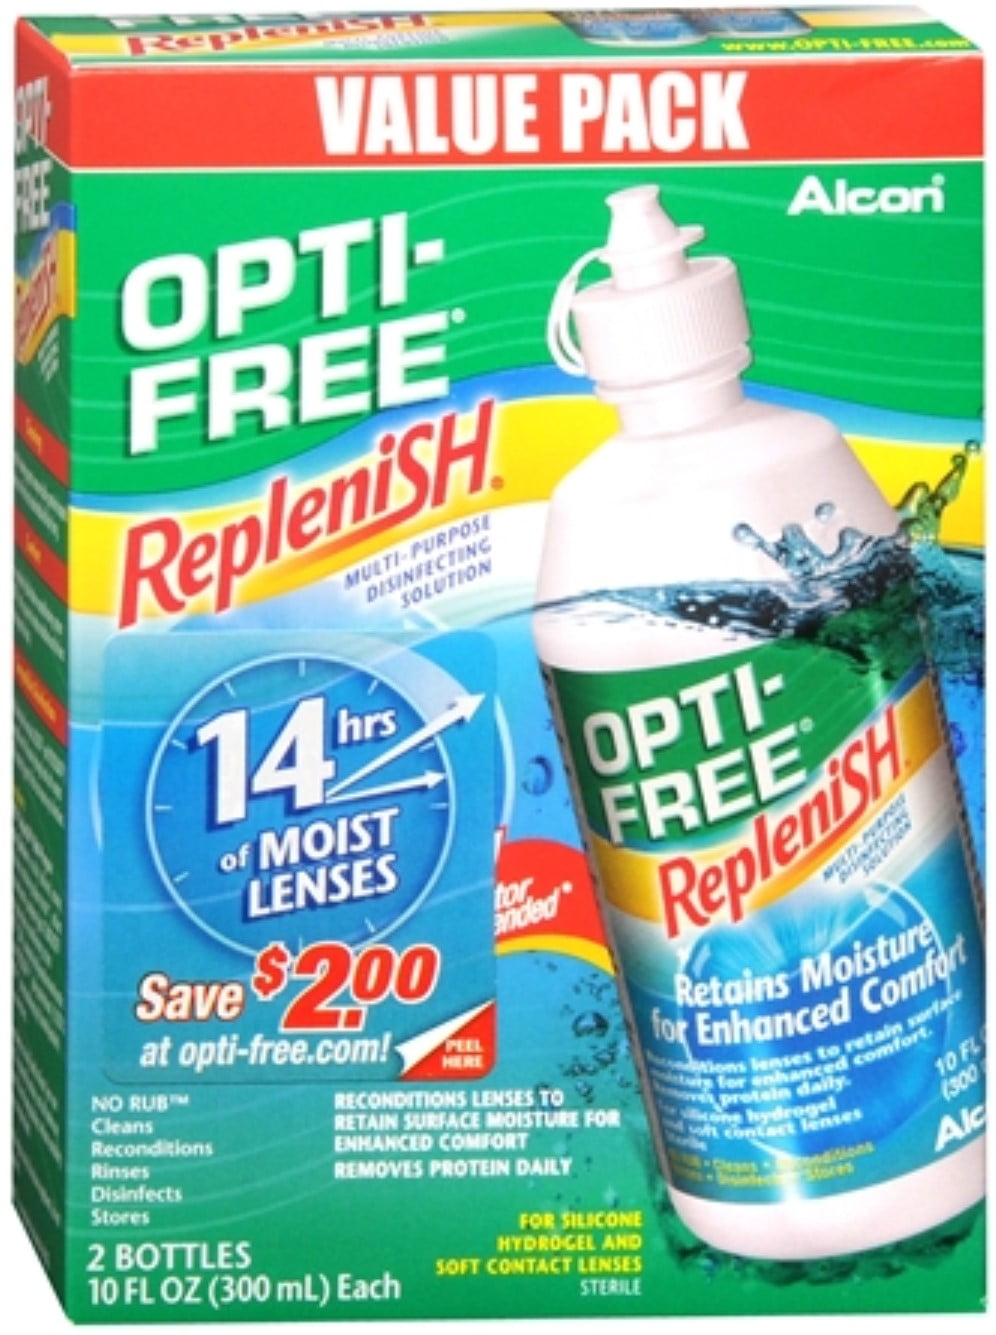 Alcon opti-free replenish ingredients in splenda cognizant us mail